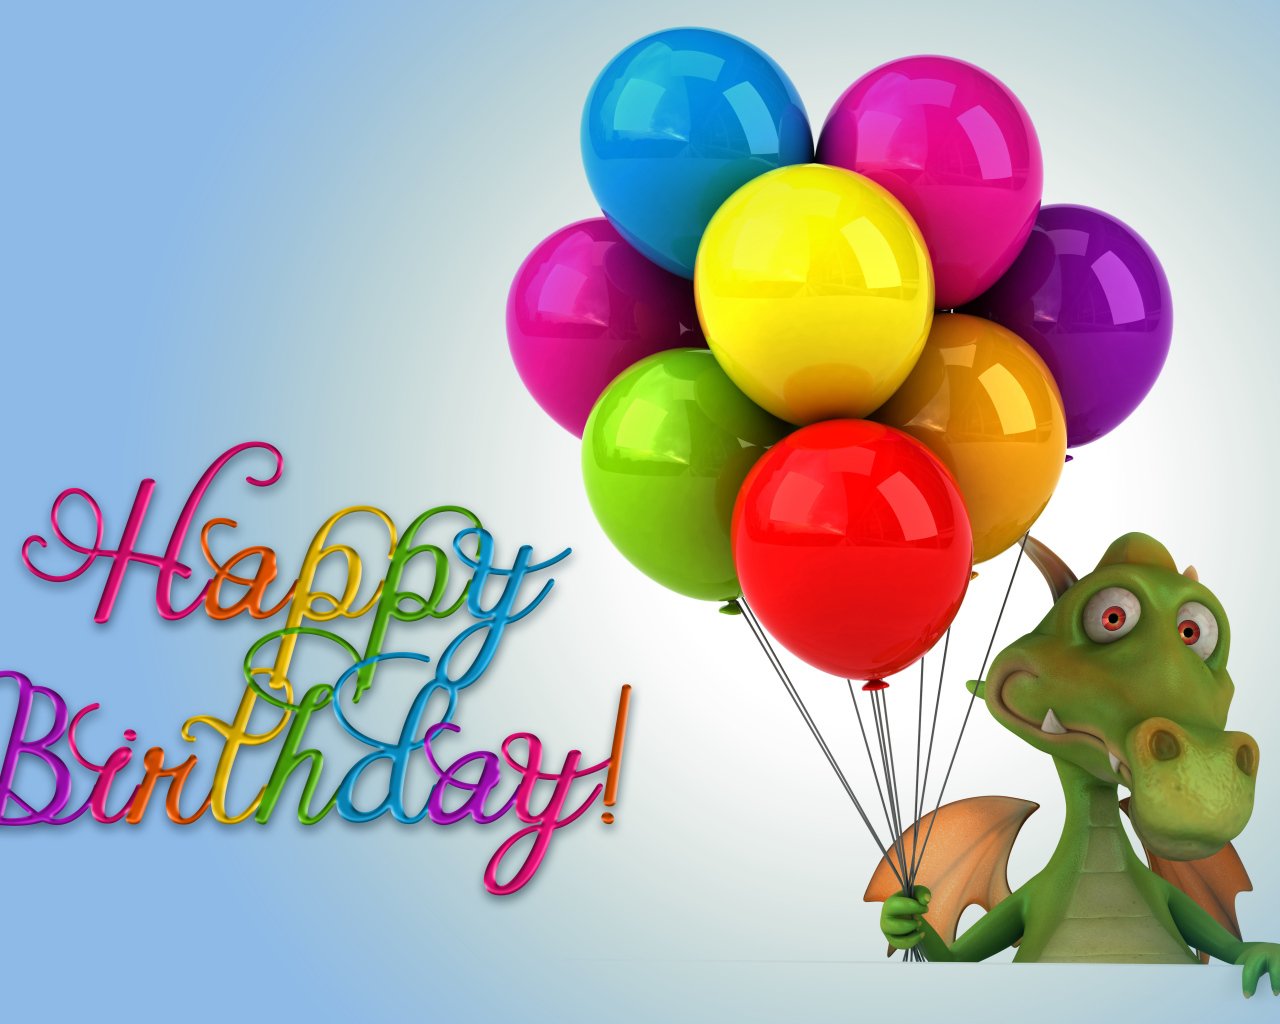 Зеленый дракон с шариками на день рождения